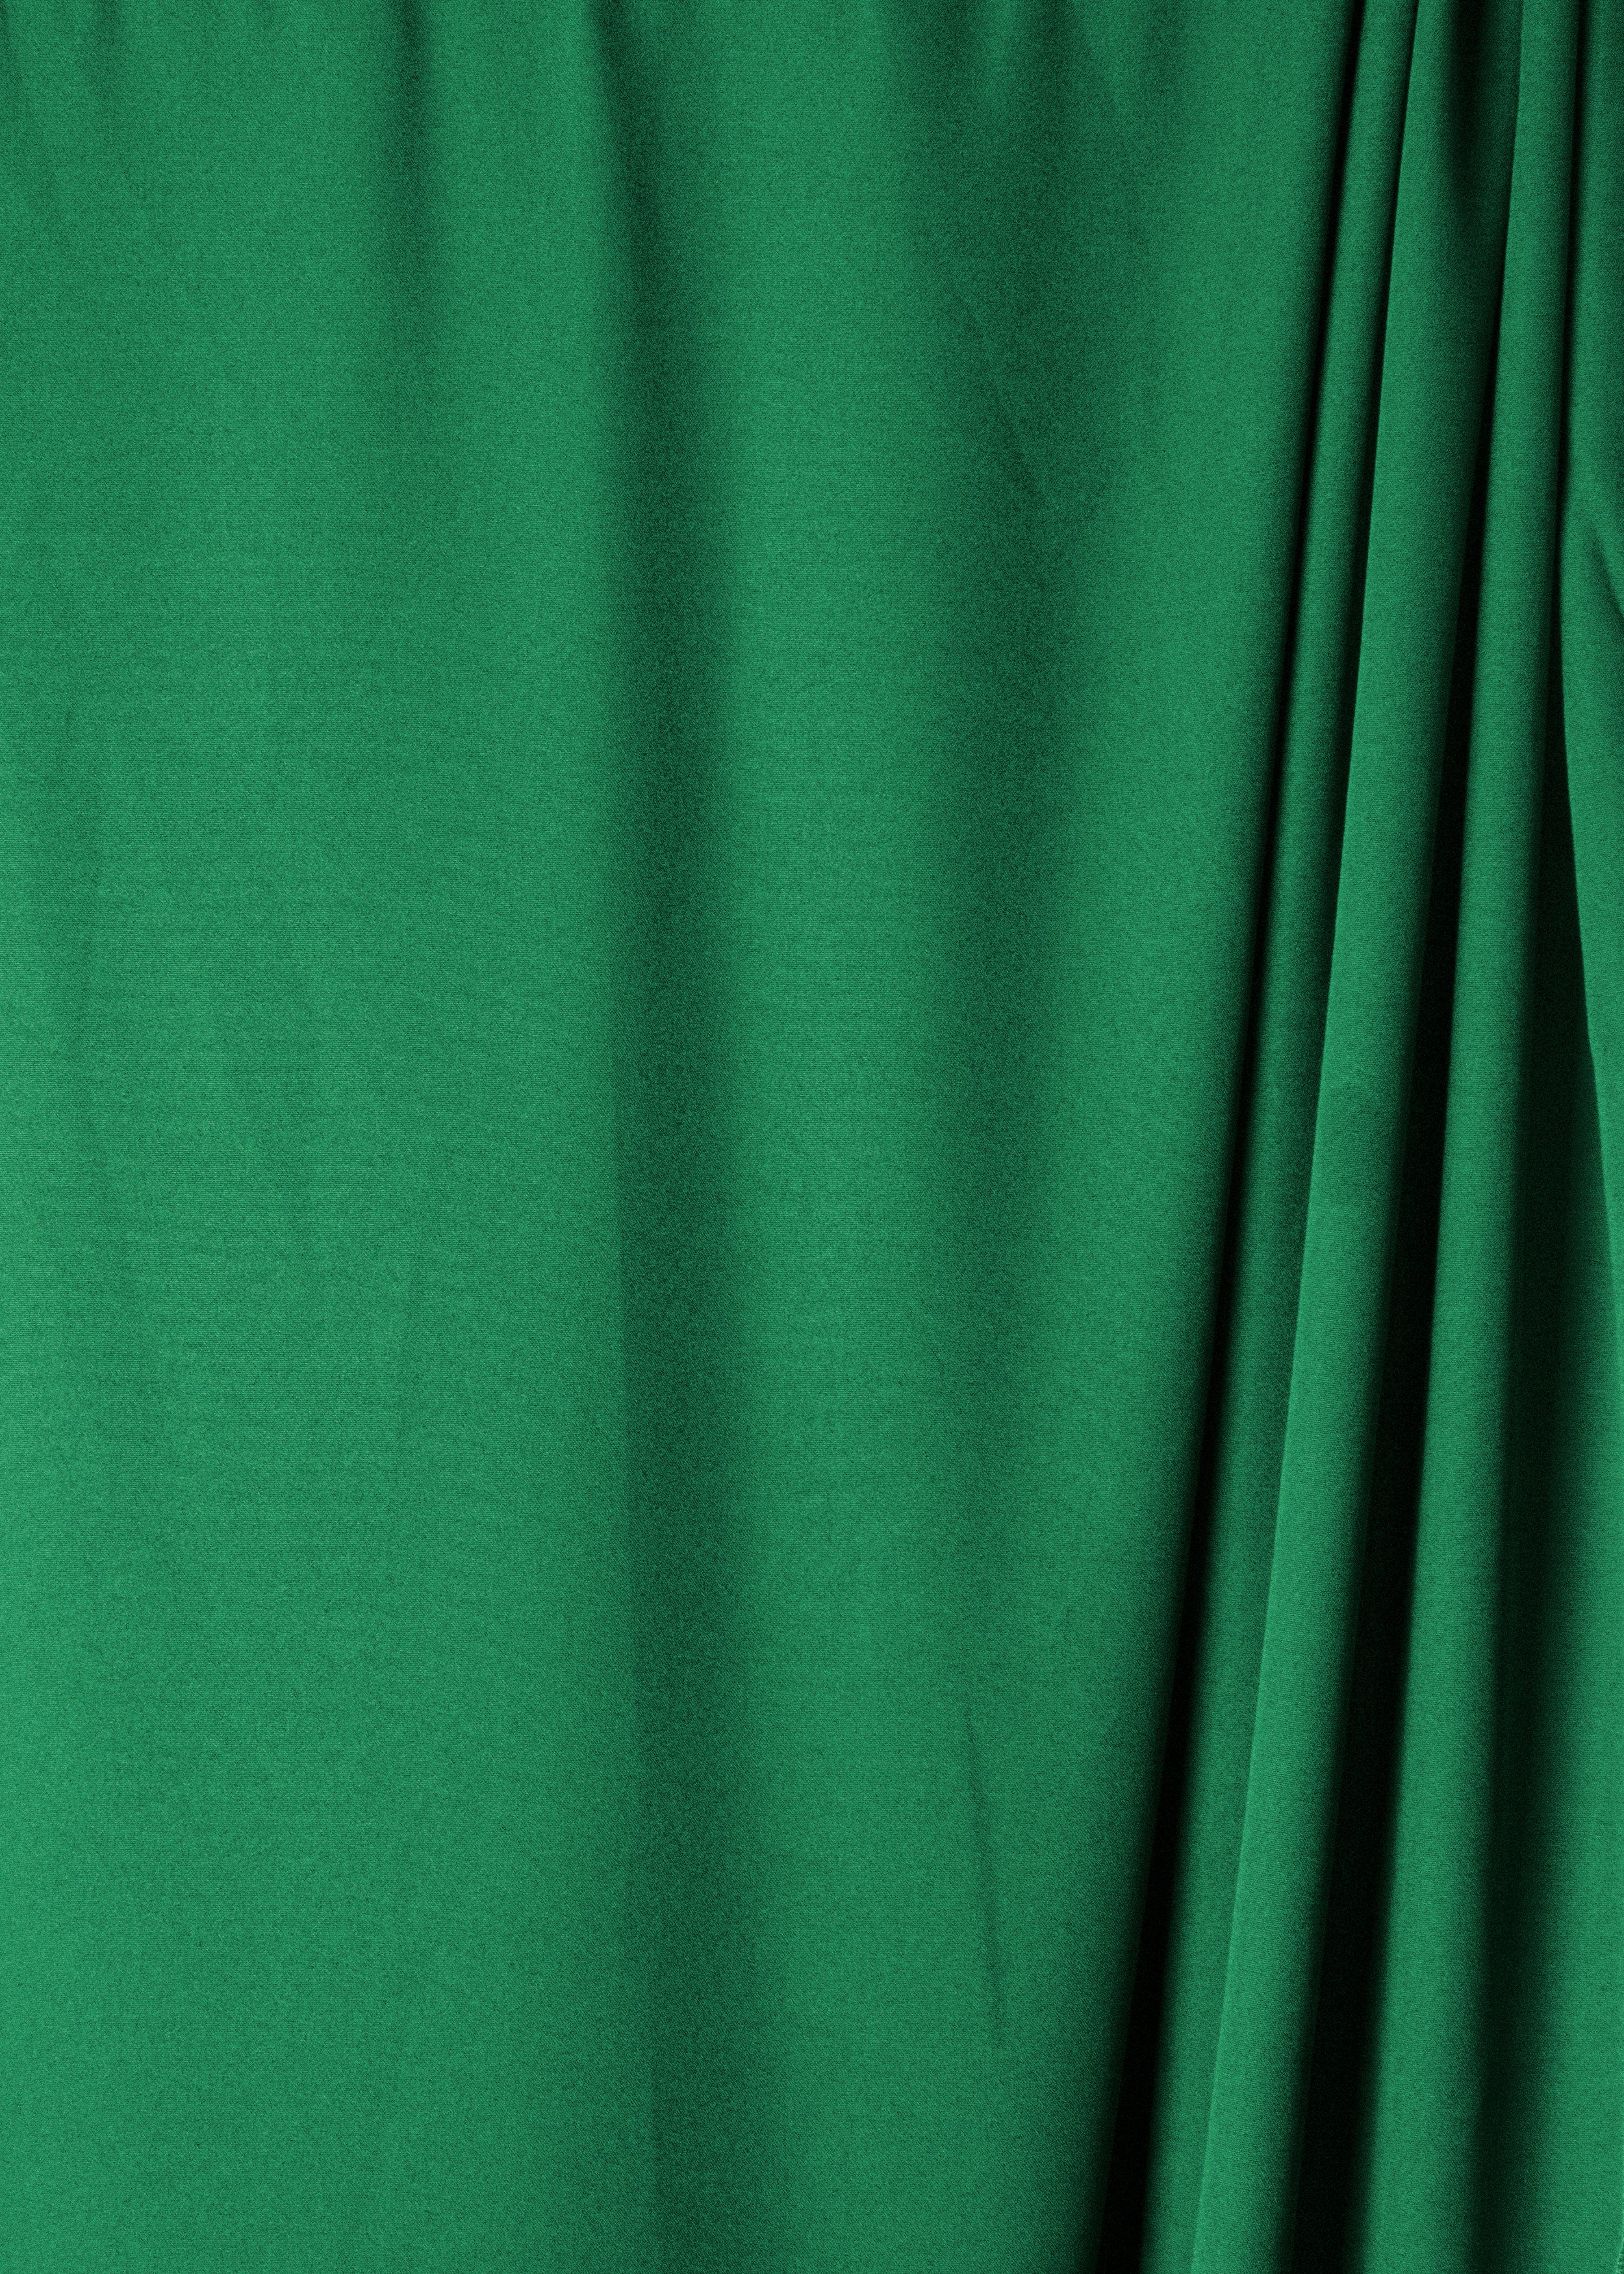 Savage Green Wrinkle-Resistant Background